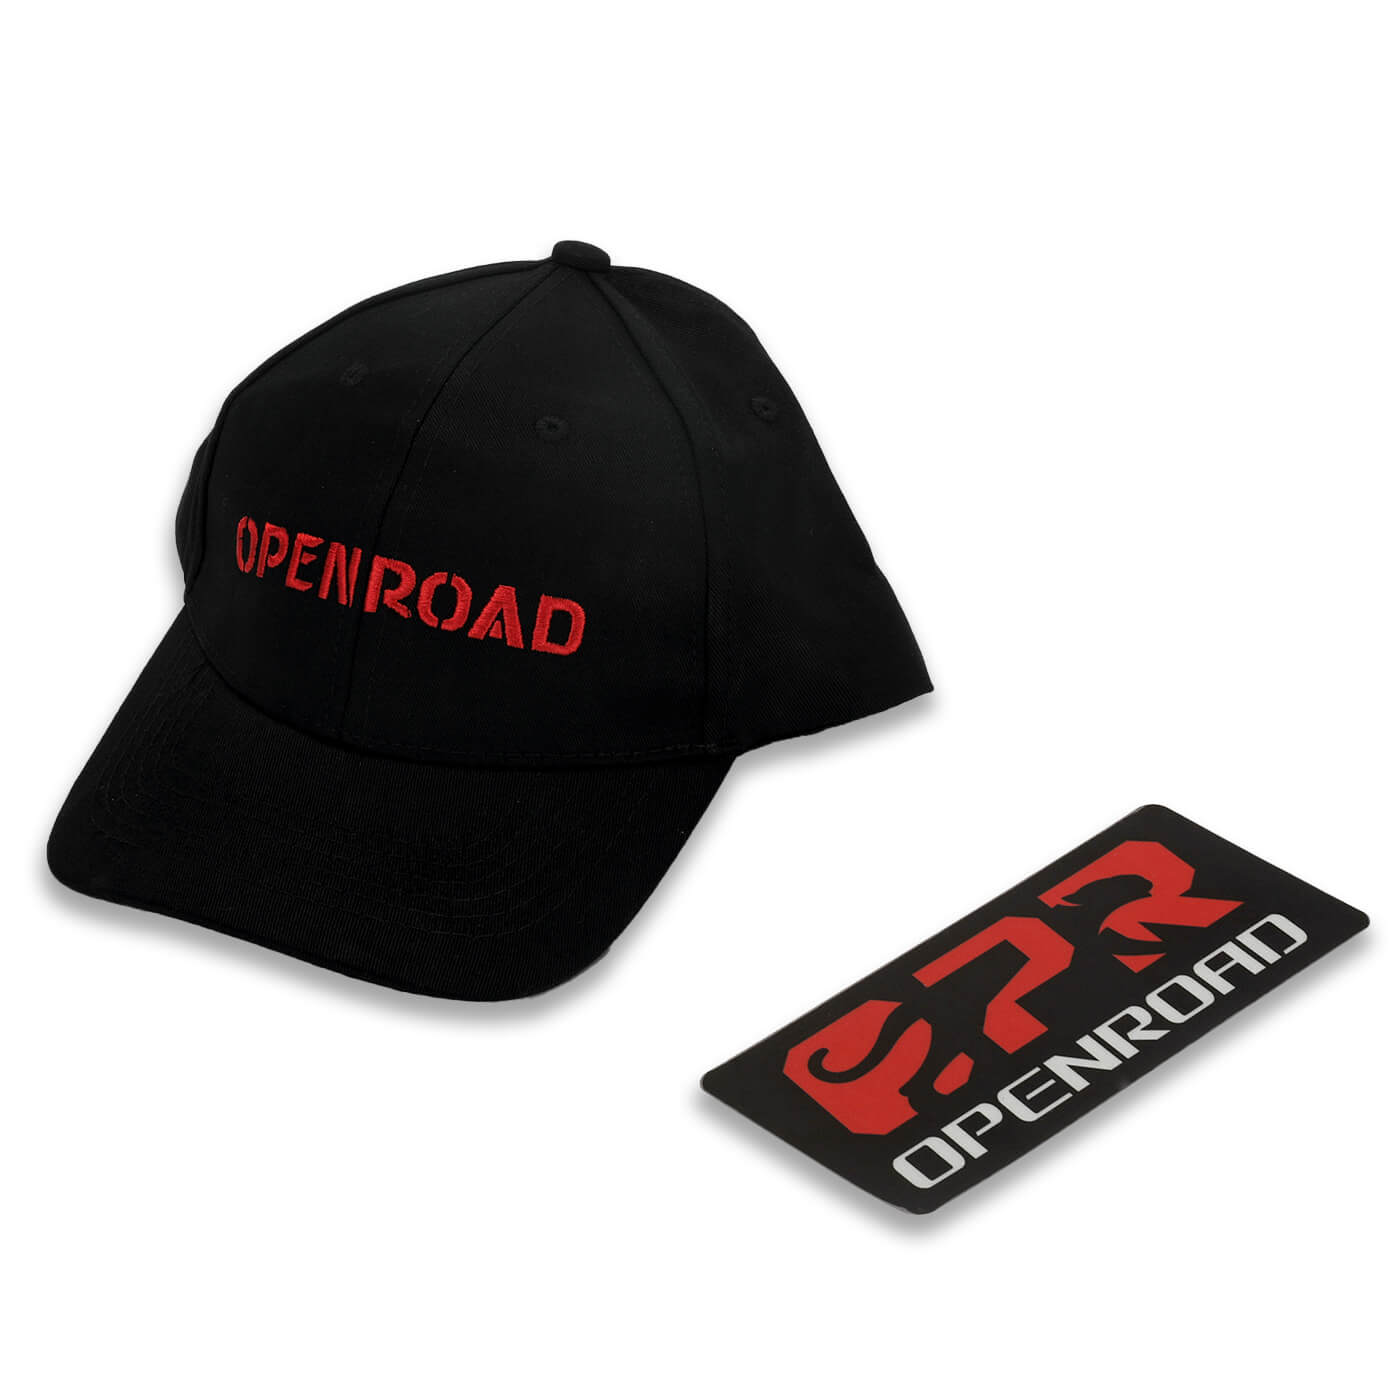 OPENROAD hat + OPENROAD fan sticker  openroad4wd.com   